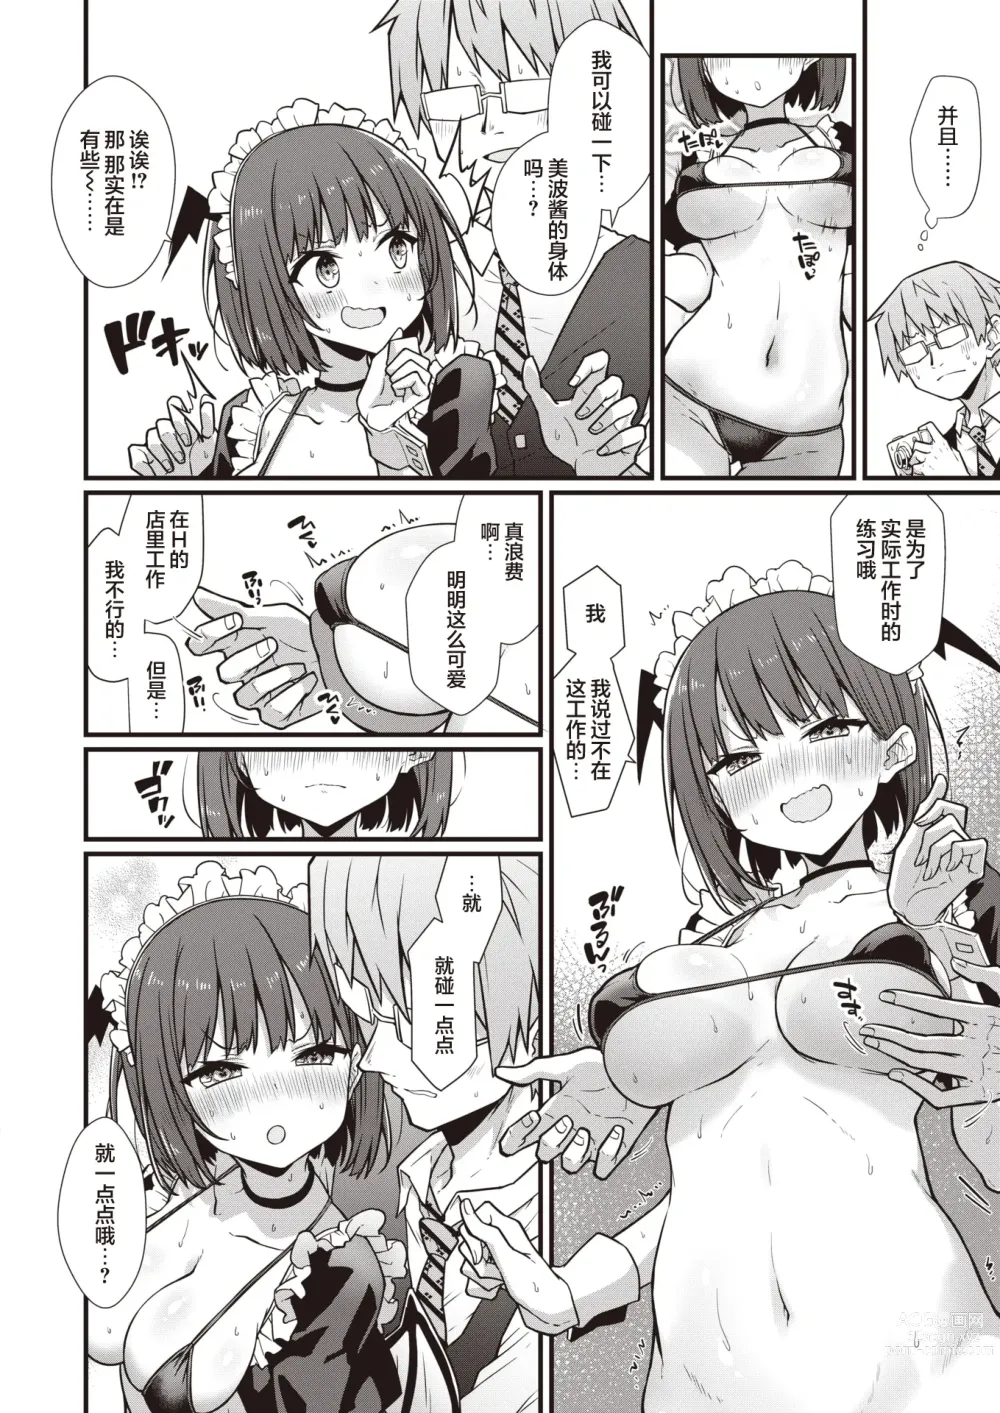 Page 9 of manga Hatarake! Minami-chan!